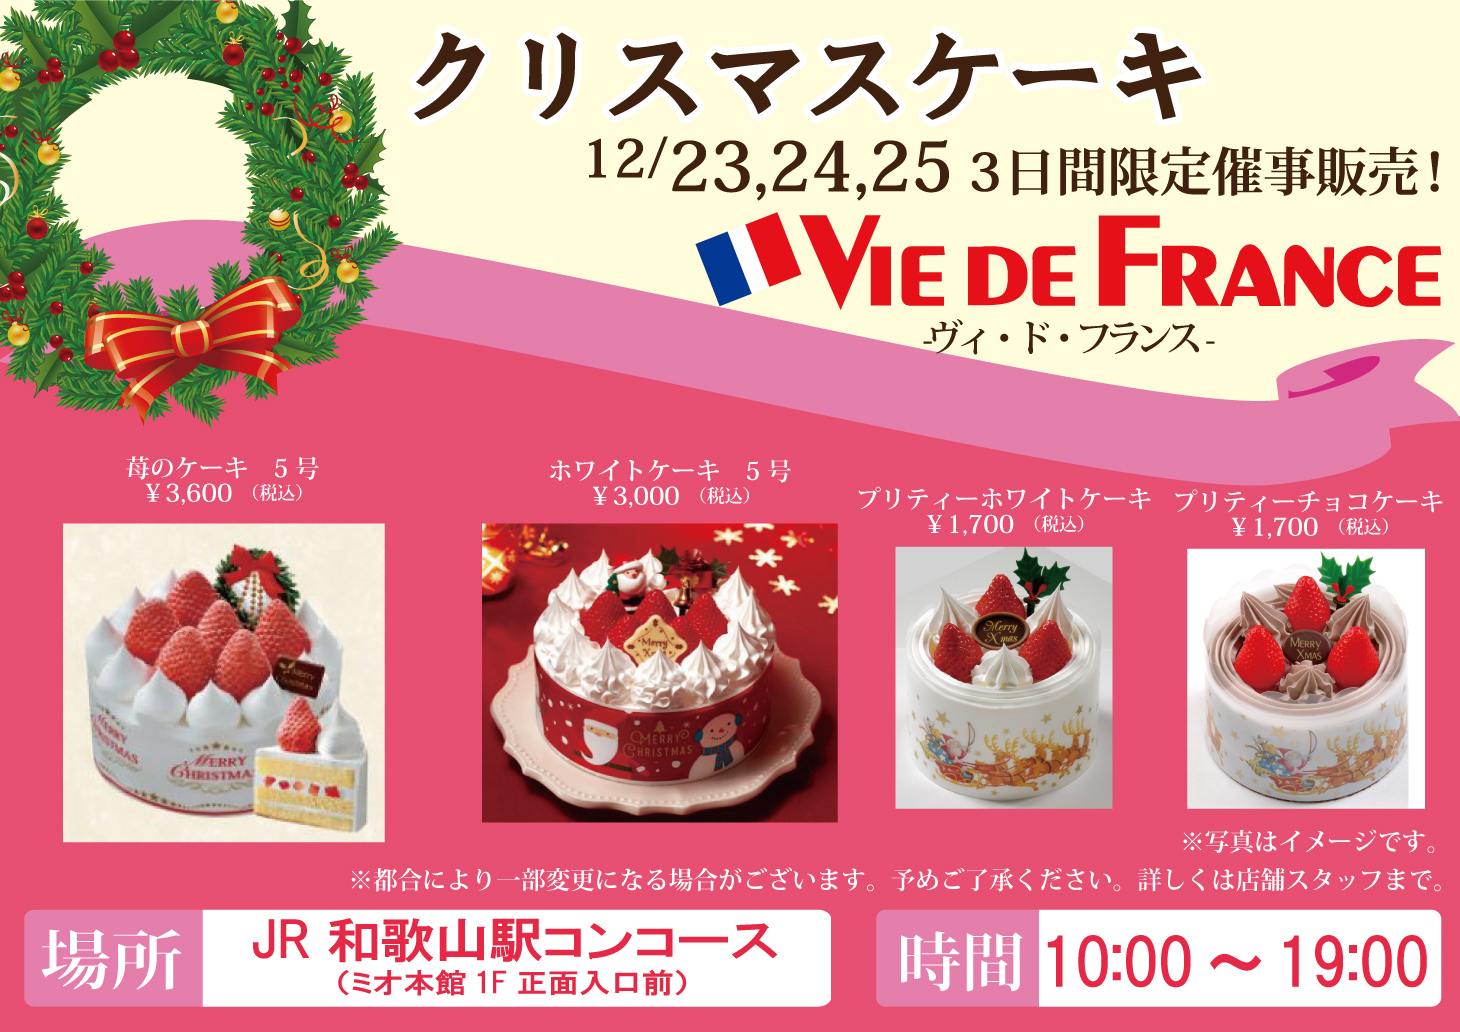 和歌山ミオ 和歌山ミオ ヴィ ド フランス では 12 24 12 25に Jr和歌山駅コンコースでクリスマスケーキ オードブルの催事販売を実施しております ぜひ この機会にお立ち寄りくださいませ クリスマスケーキ 和歌山駅 オードブル ヴィ ド